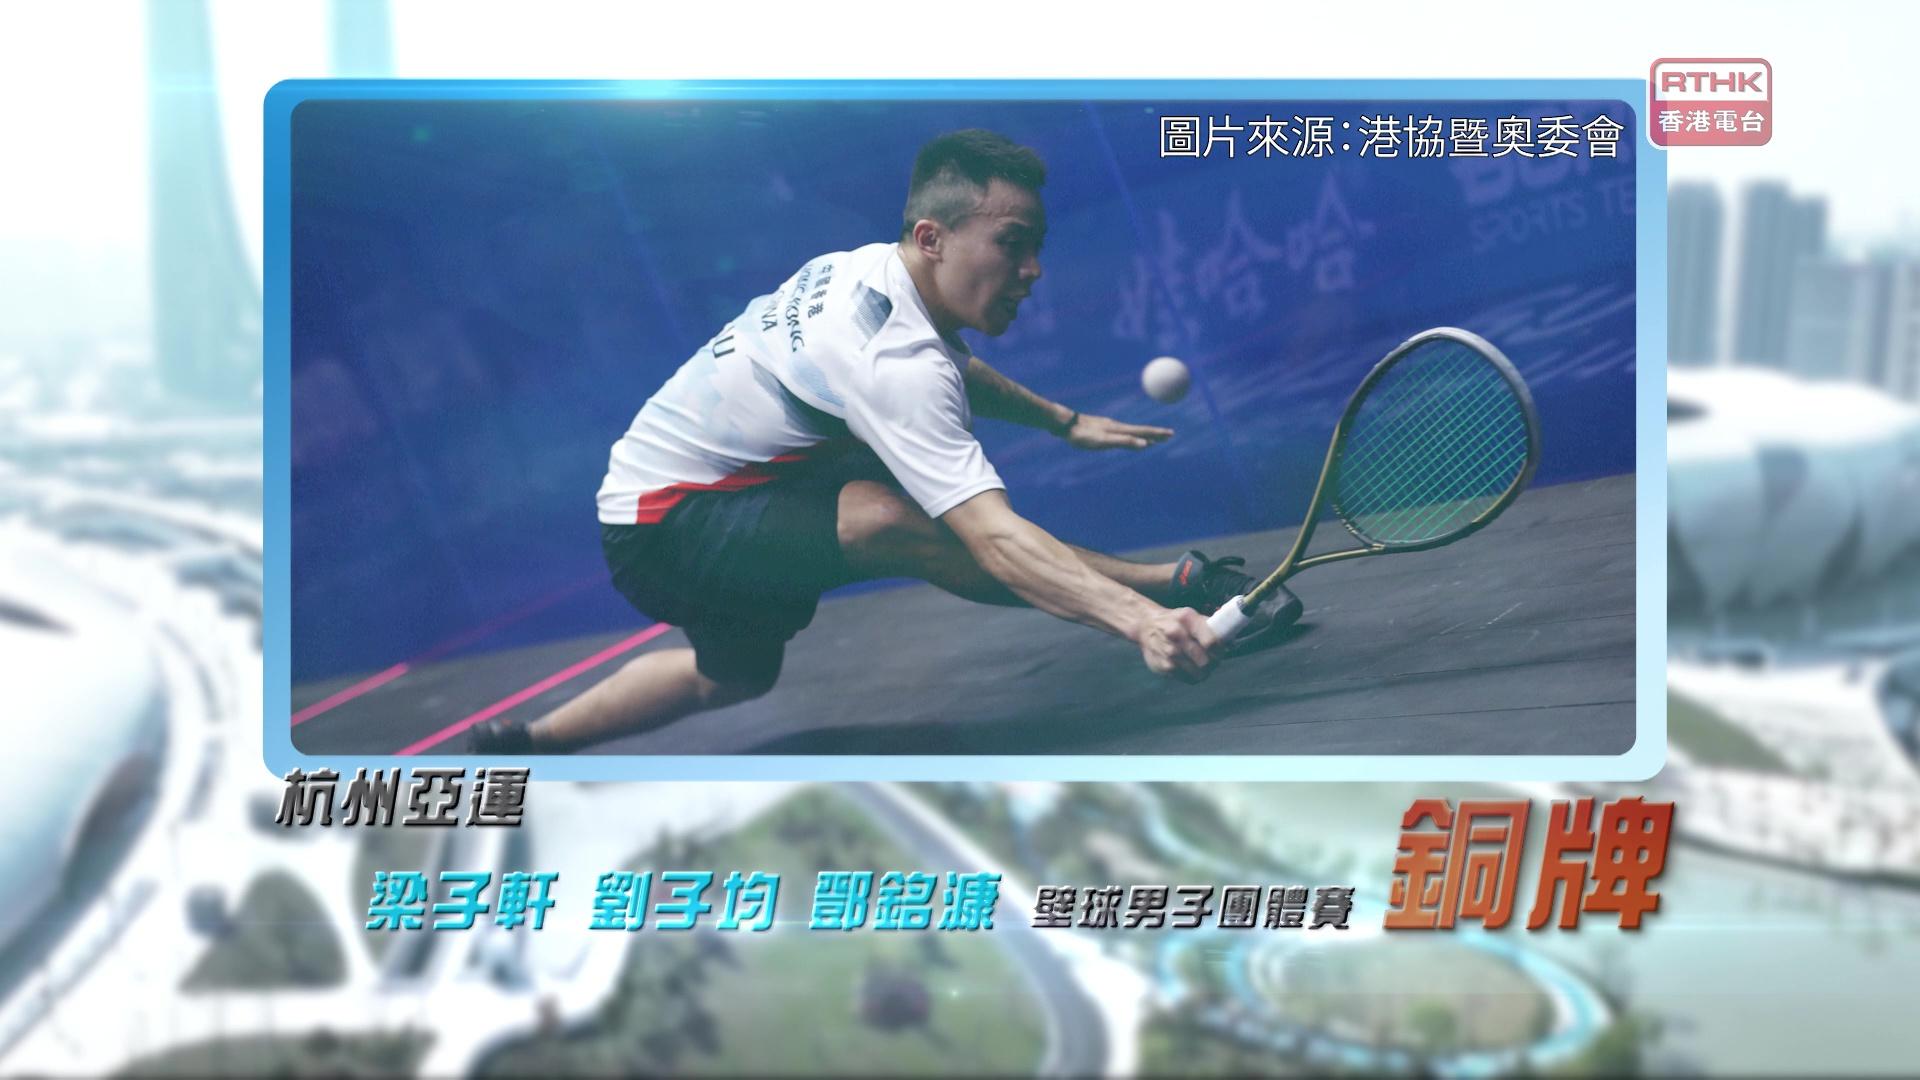 恭喜梁子轩、刘子均、邓铭漮于杭州亚运壁球男子团体赛取得铜牌